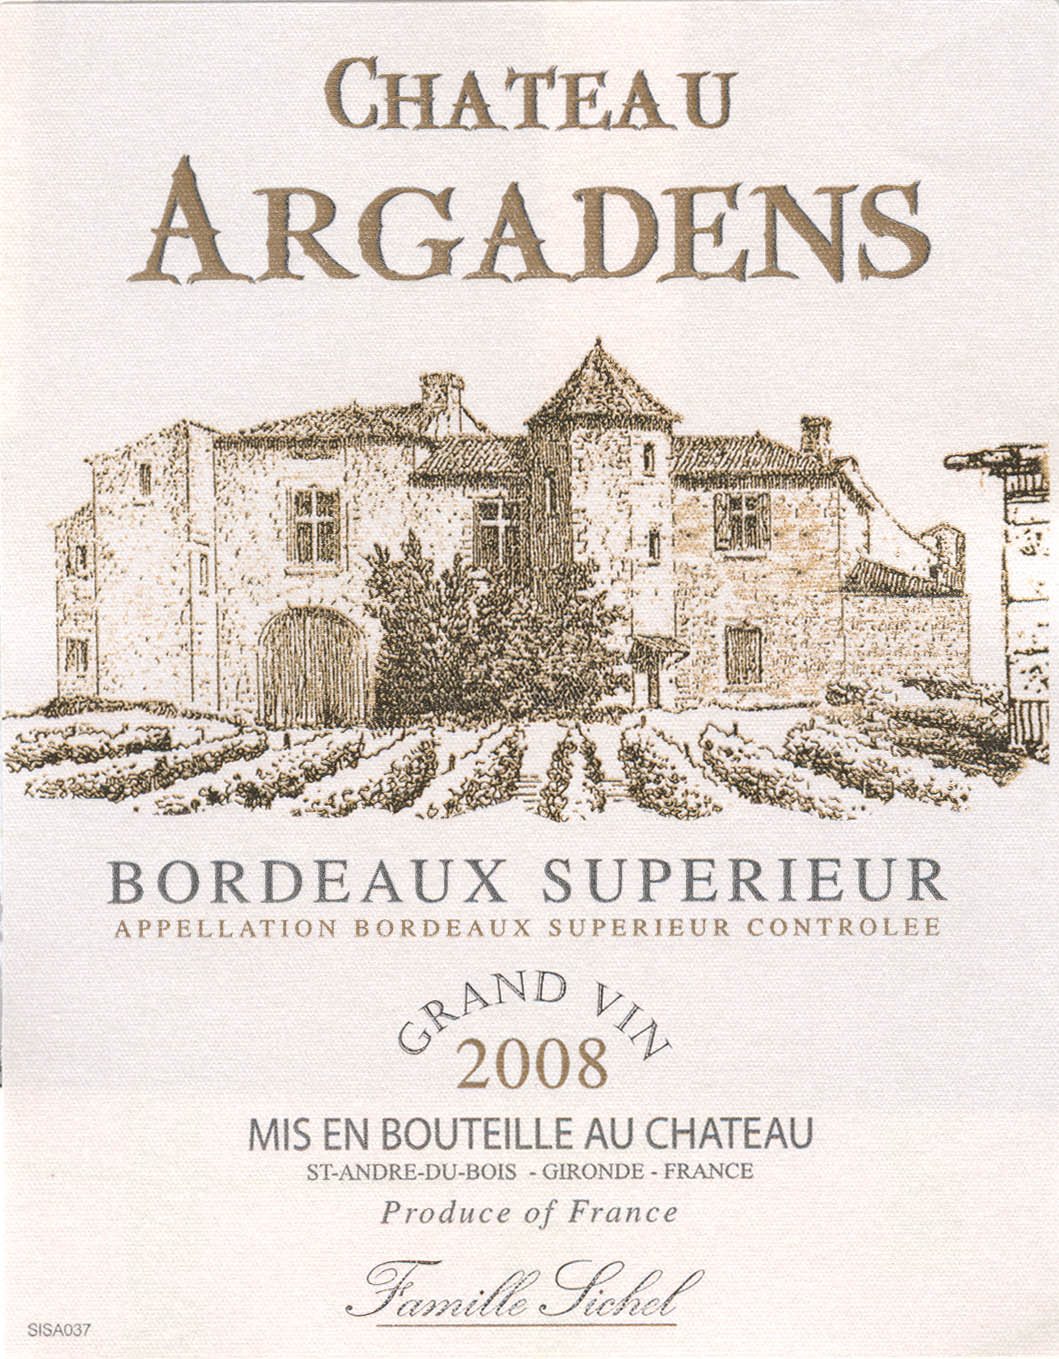 Château Argadens AOC Bordeaux Supérieur Tinto sm